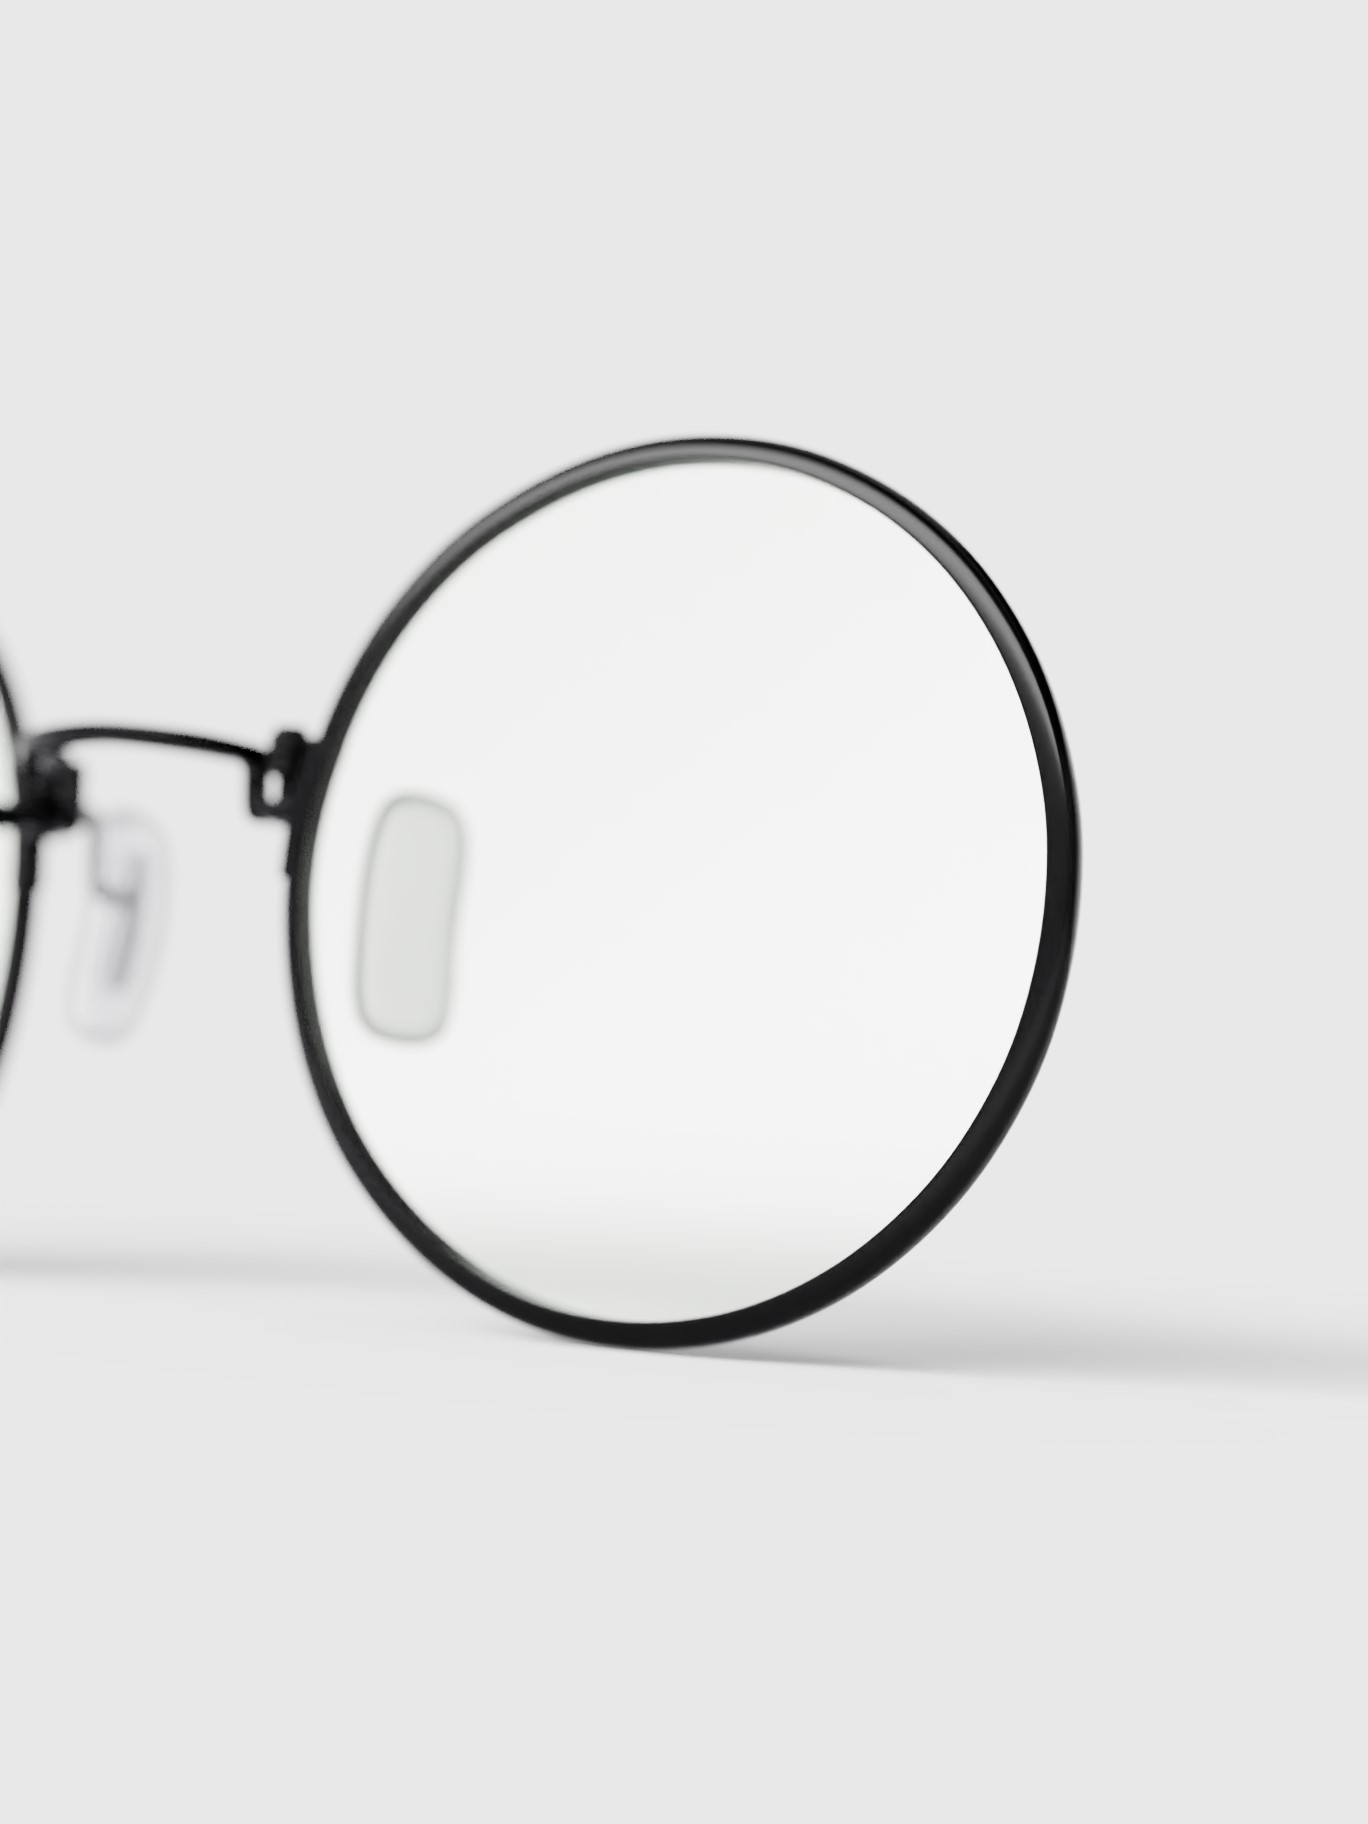 Glasses' right lens detail